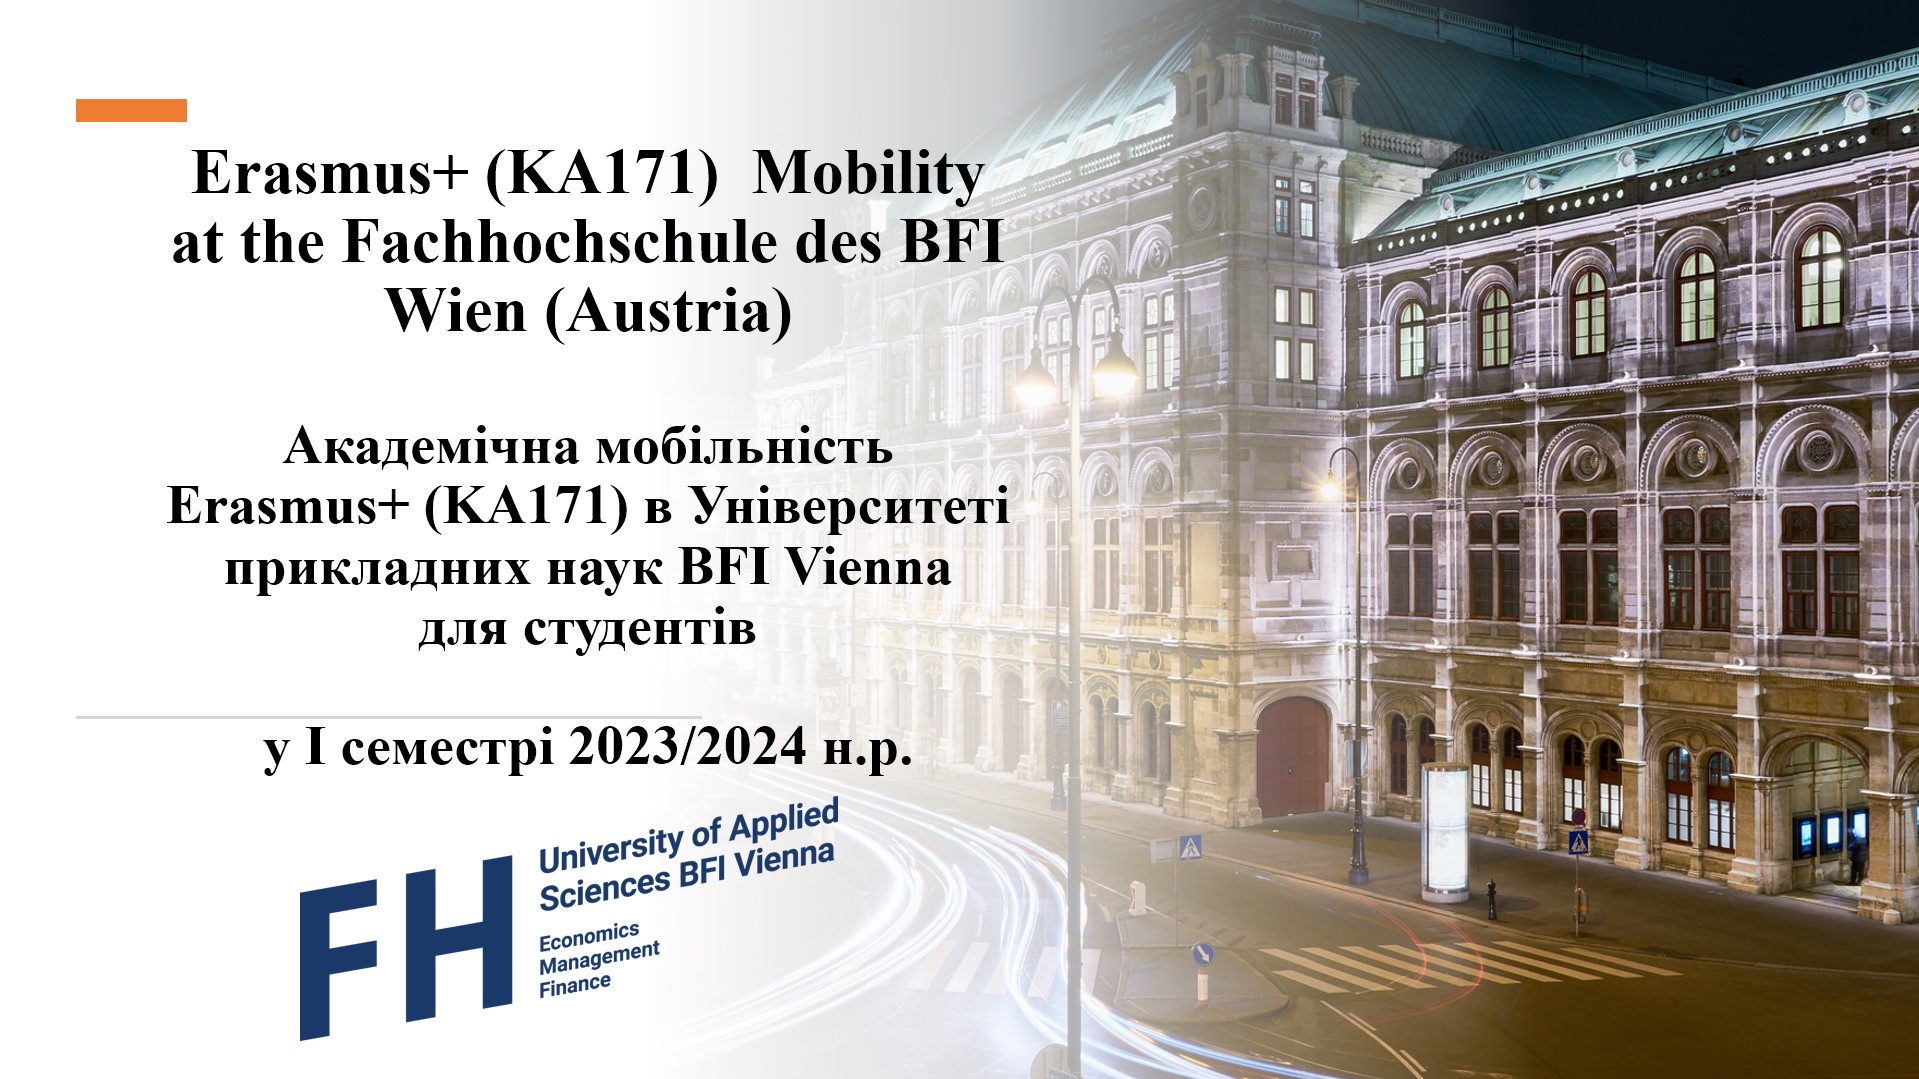 Університет прикладних наук BFI Vienna запрошує двох  студенток ННІ ФЕУП  взяти участь у програмі академічної мобільності восени 2023 року